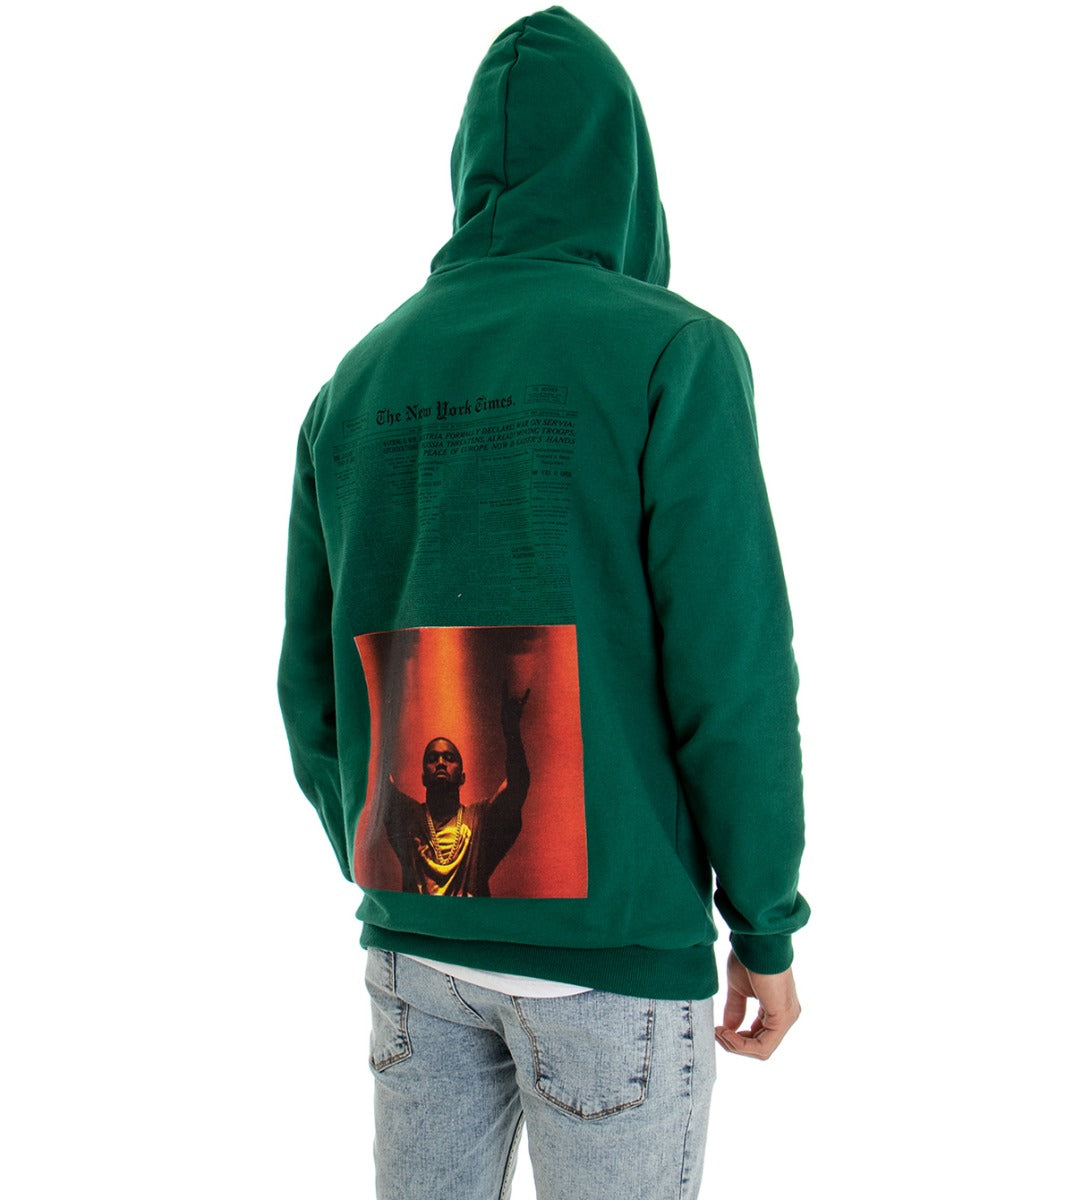 Men's Sweatshirt with Hood Green Shirt Written Print Regular Fit GIOSAL-F2532A